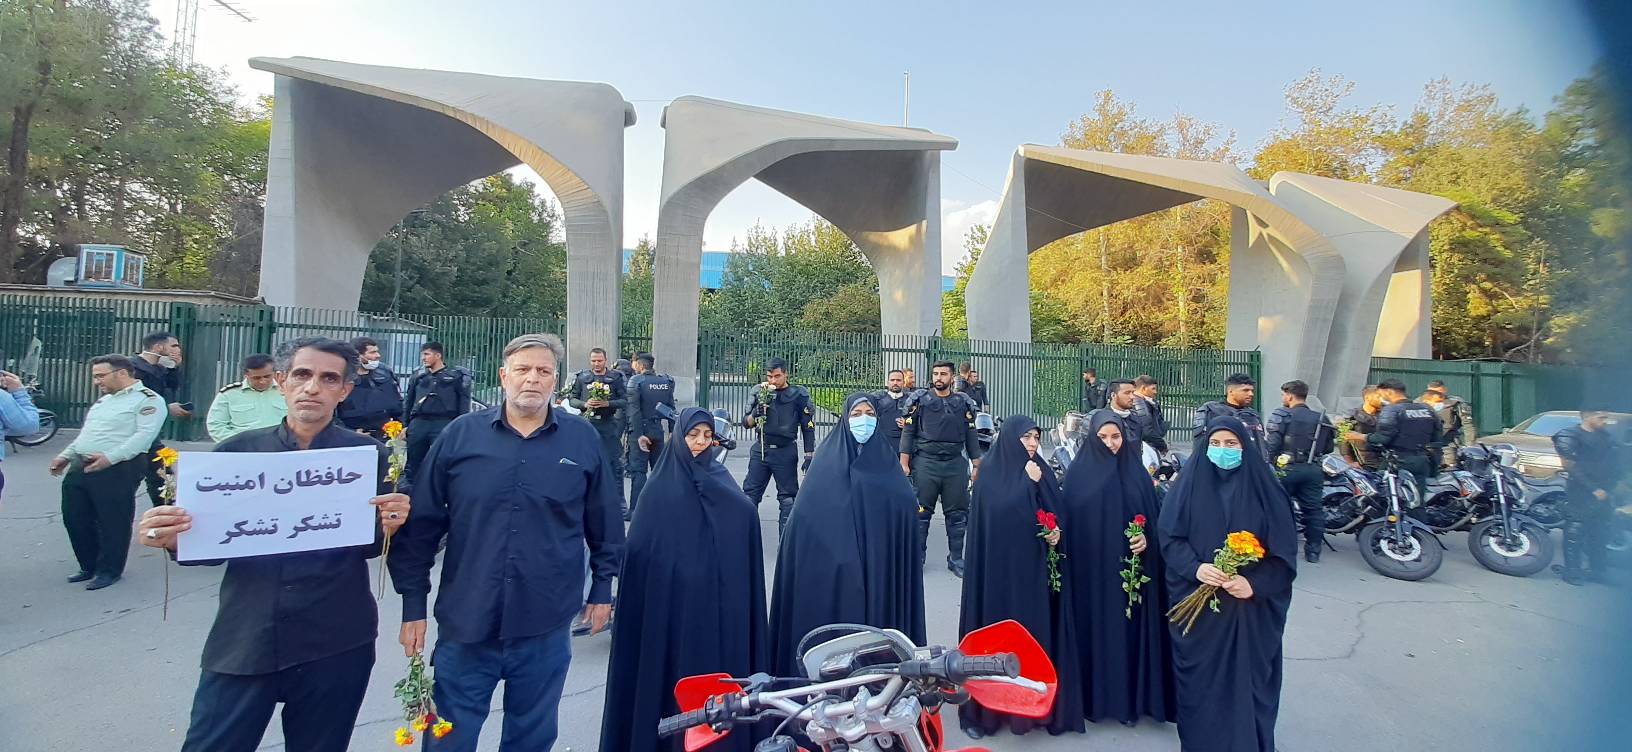 تشکر و قدردانی خانواده های شهدا و مردم تهران از حافظان امنیت/تصاویر